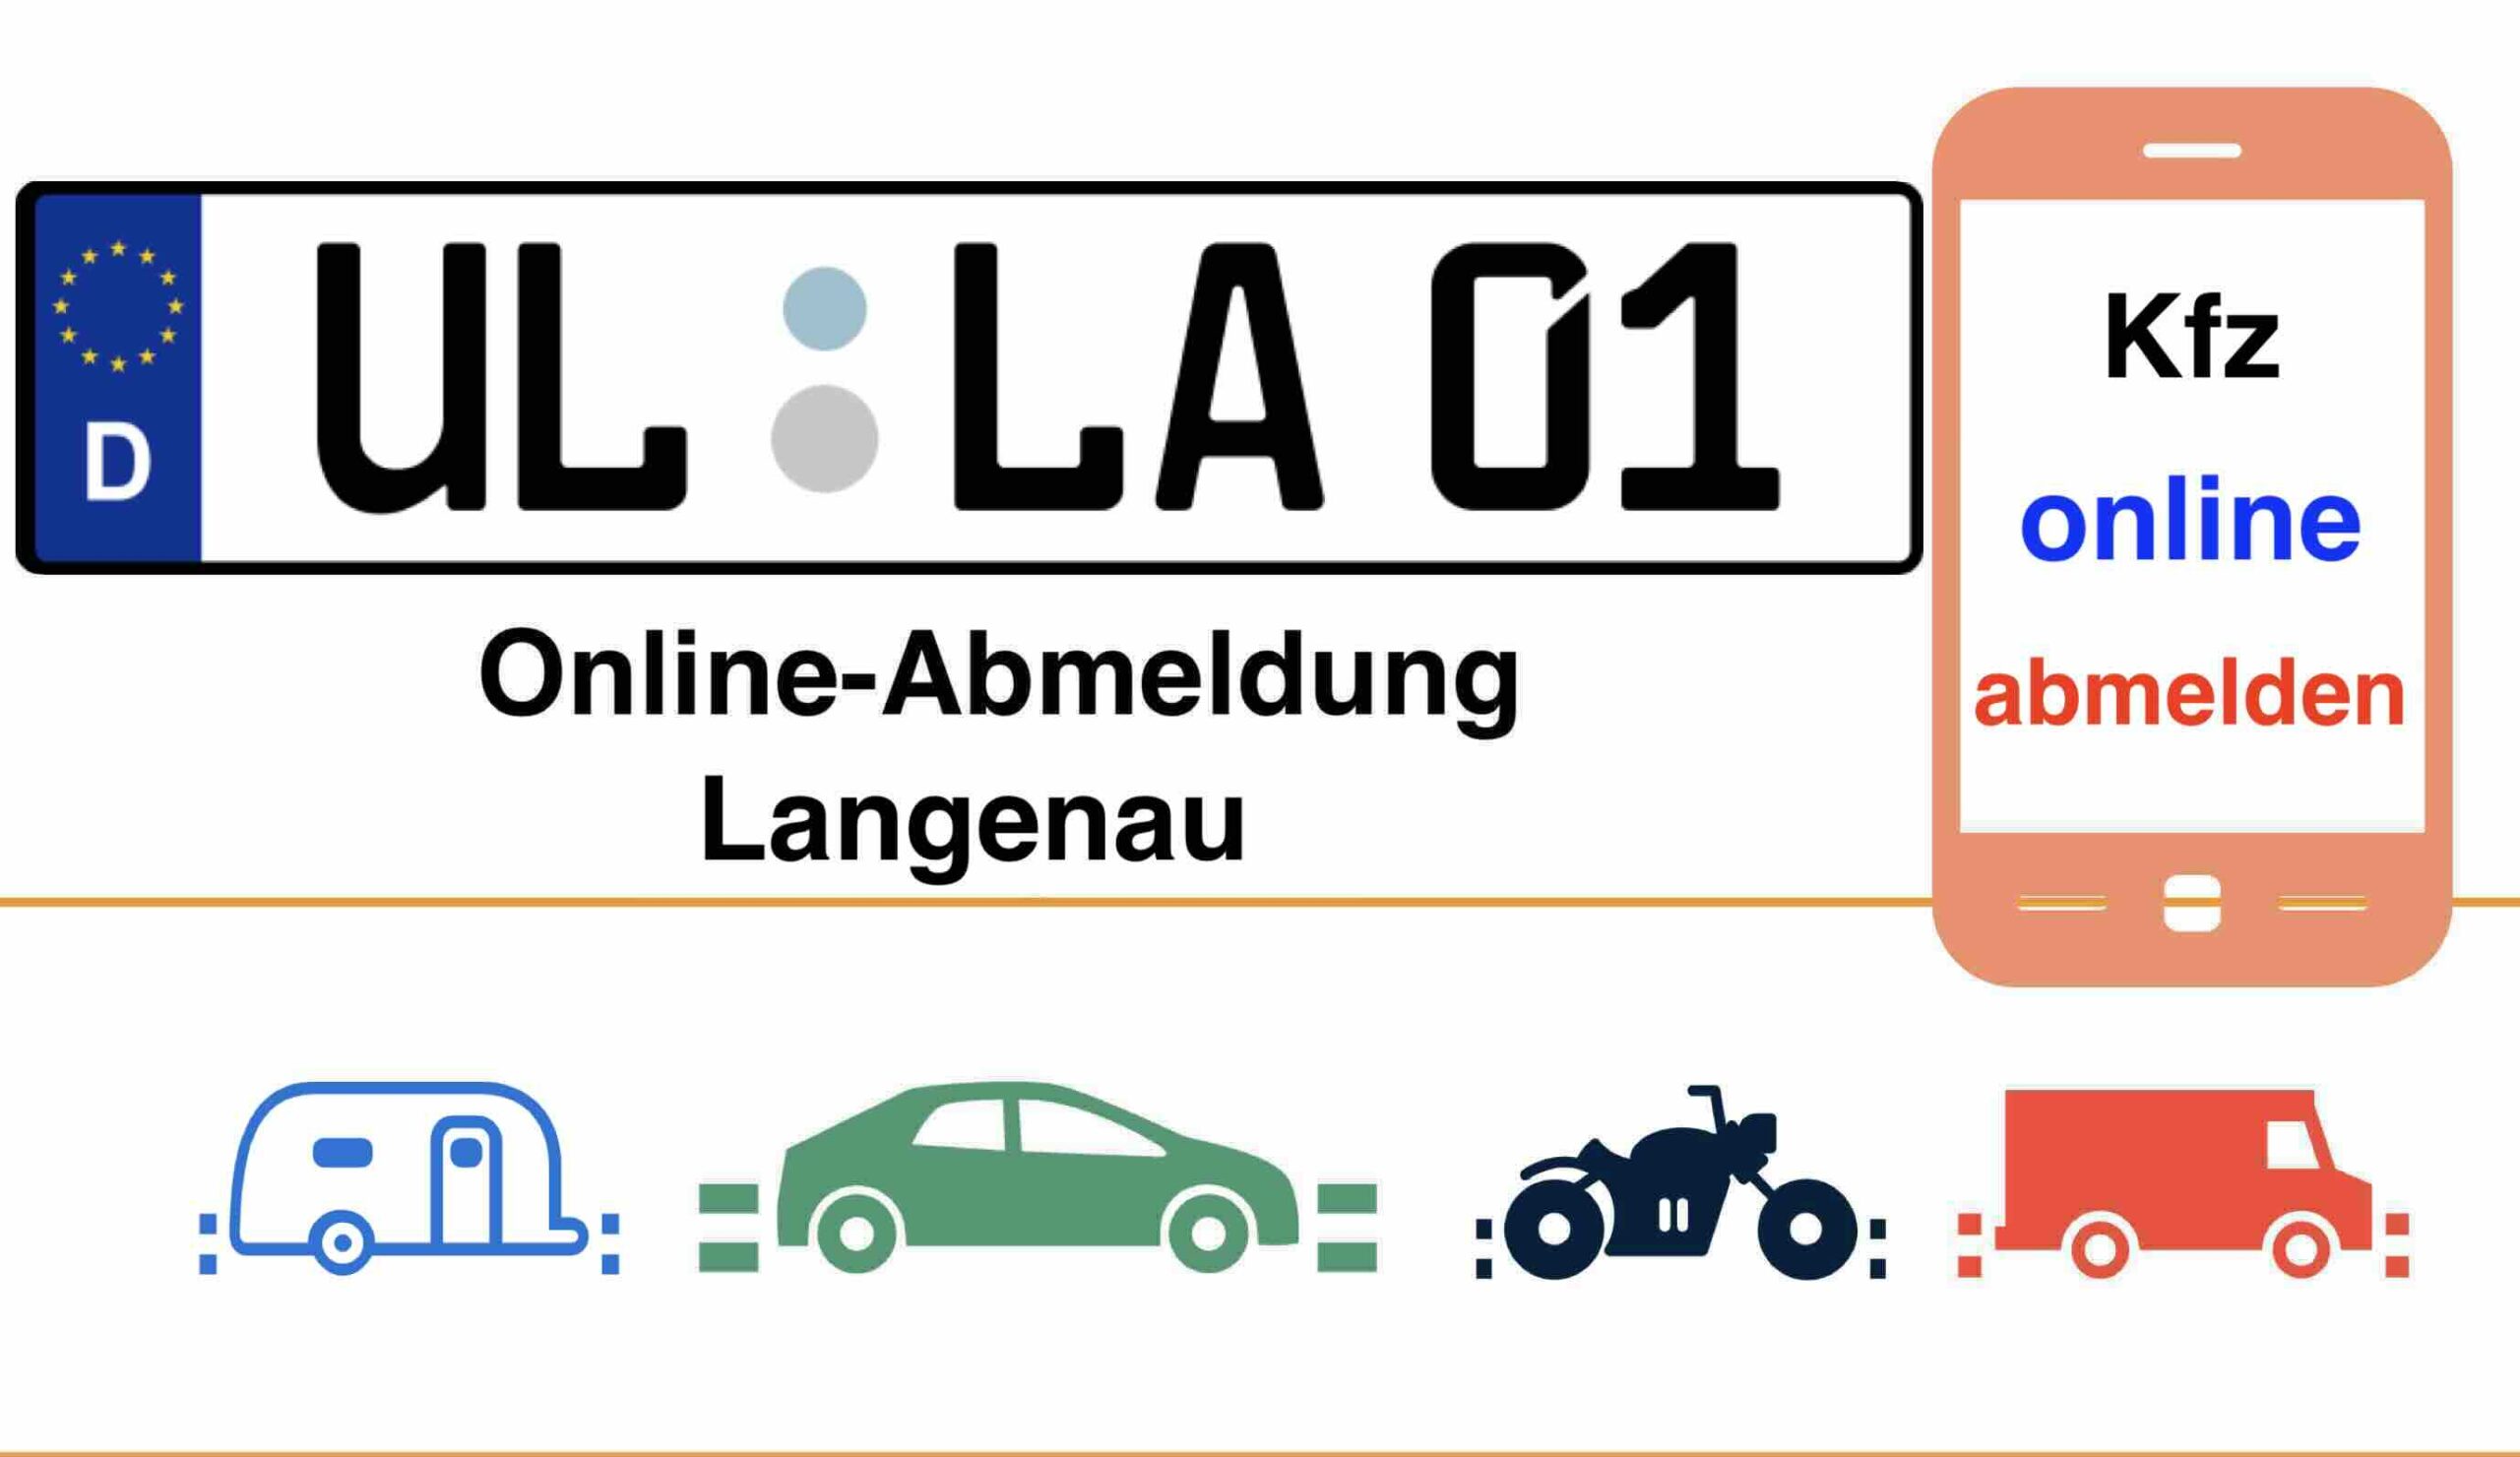 Online-Abmeldung in Langenau 